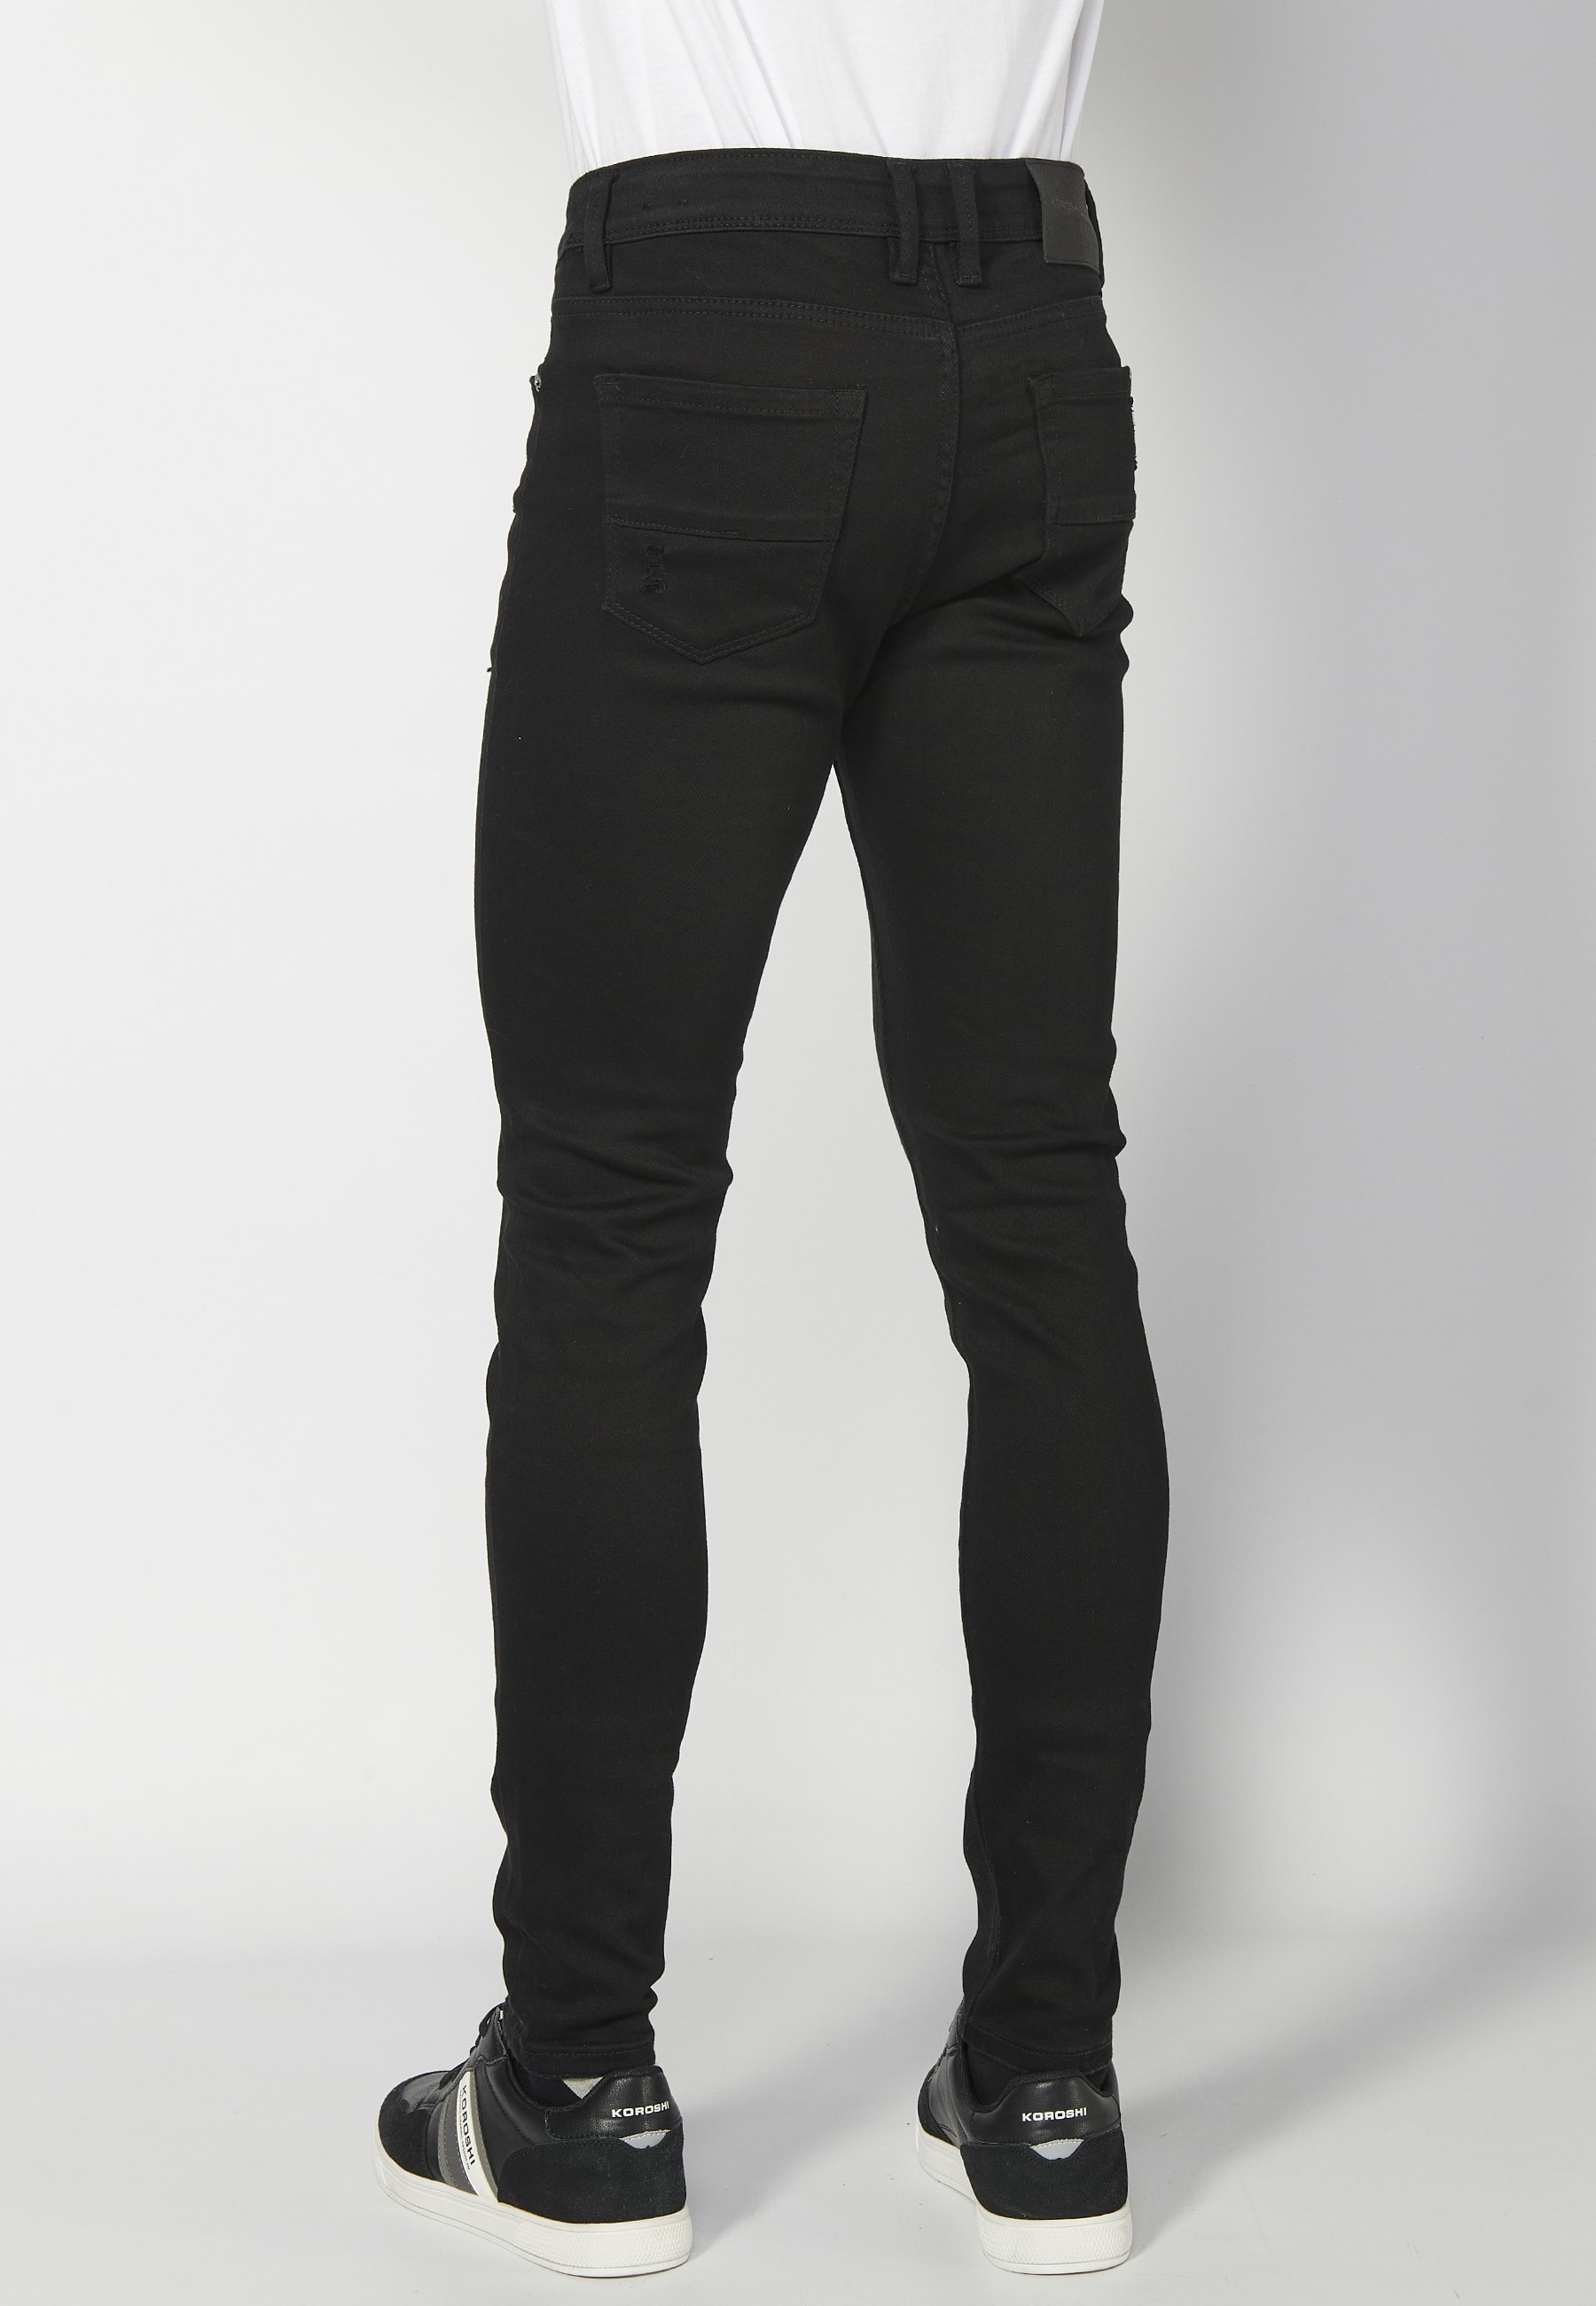 Pantalons llargs super skinny, amb cinc butxaques, color Negre per a Home 2